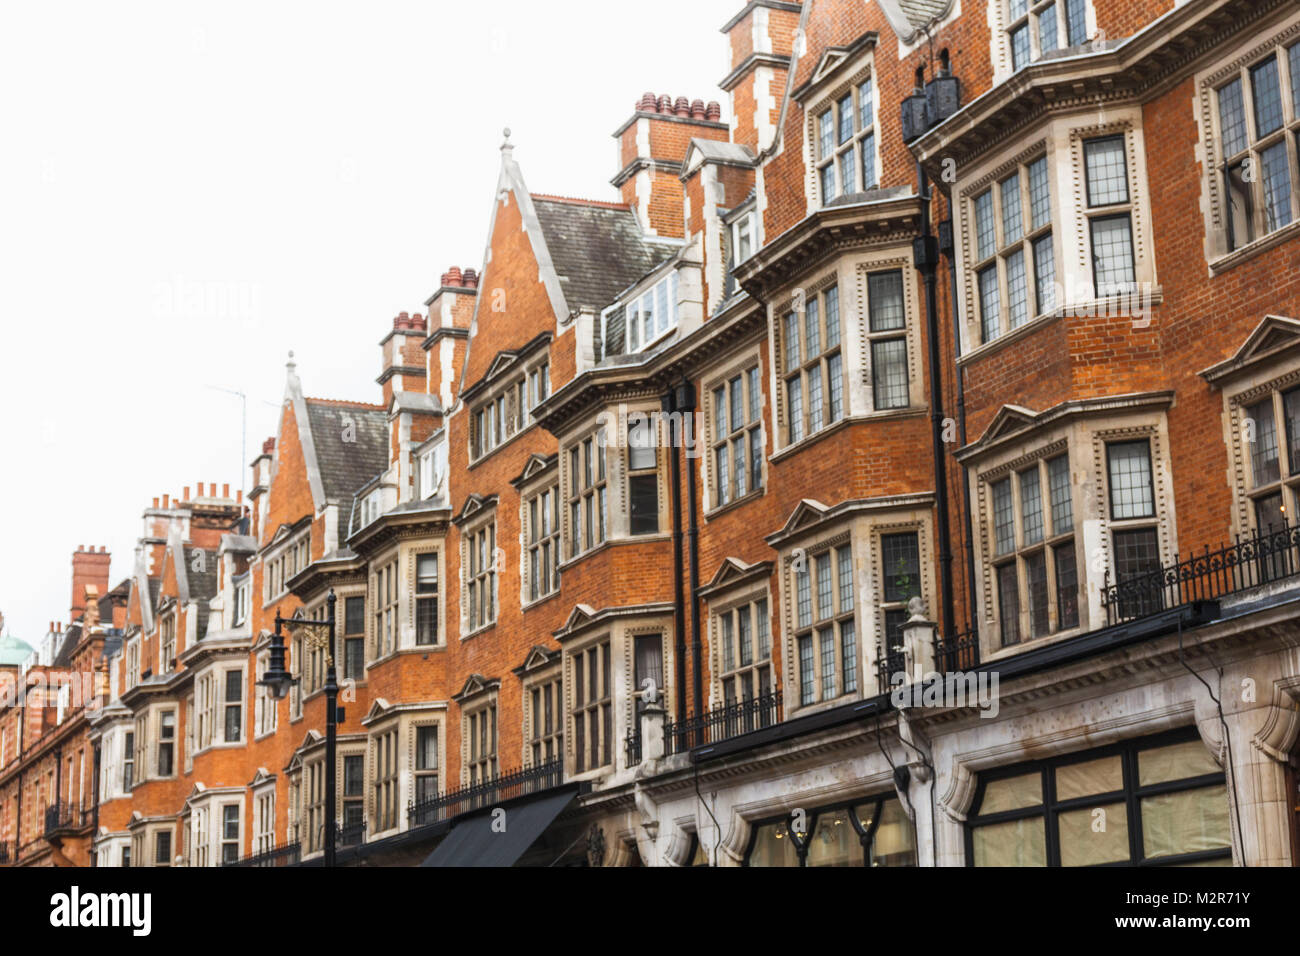 Hassade chiudere finestre a bovindo e costruzioni di una casa cittadina Londinese Foto Stock